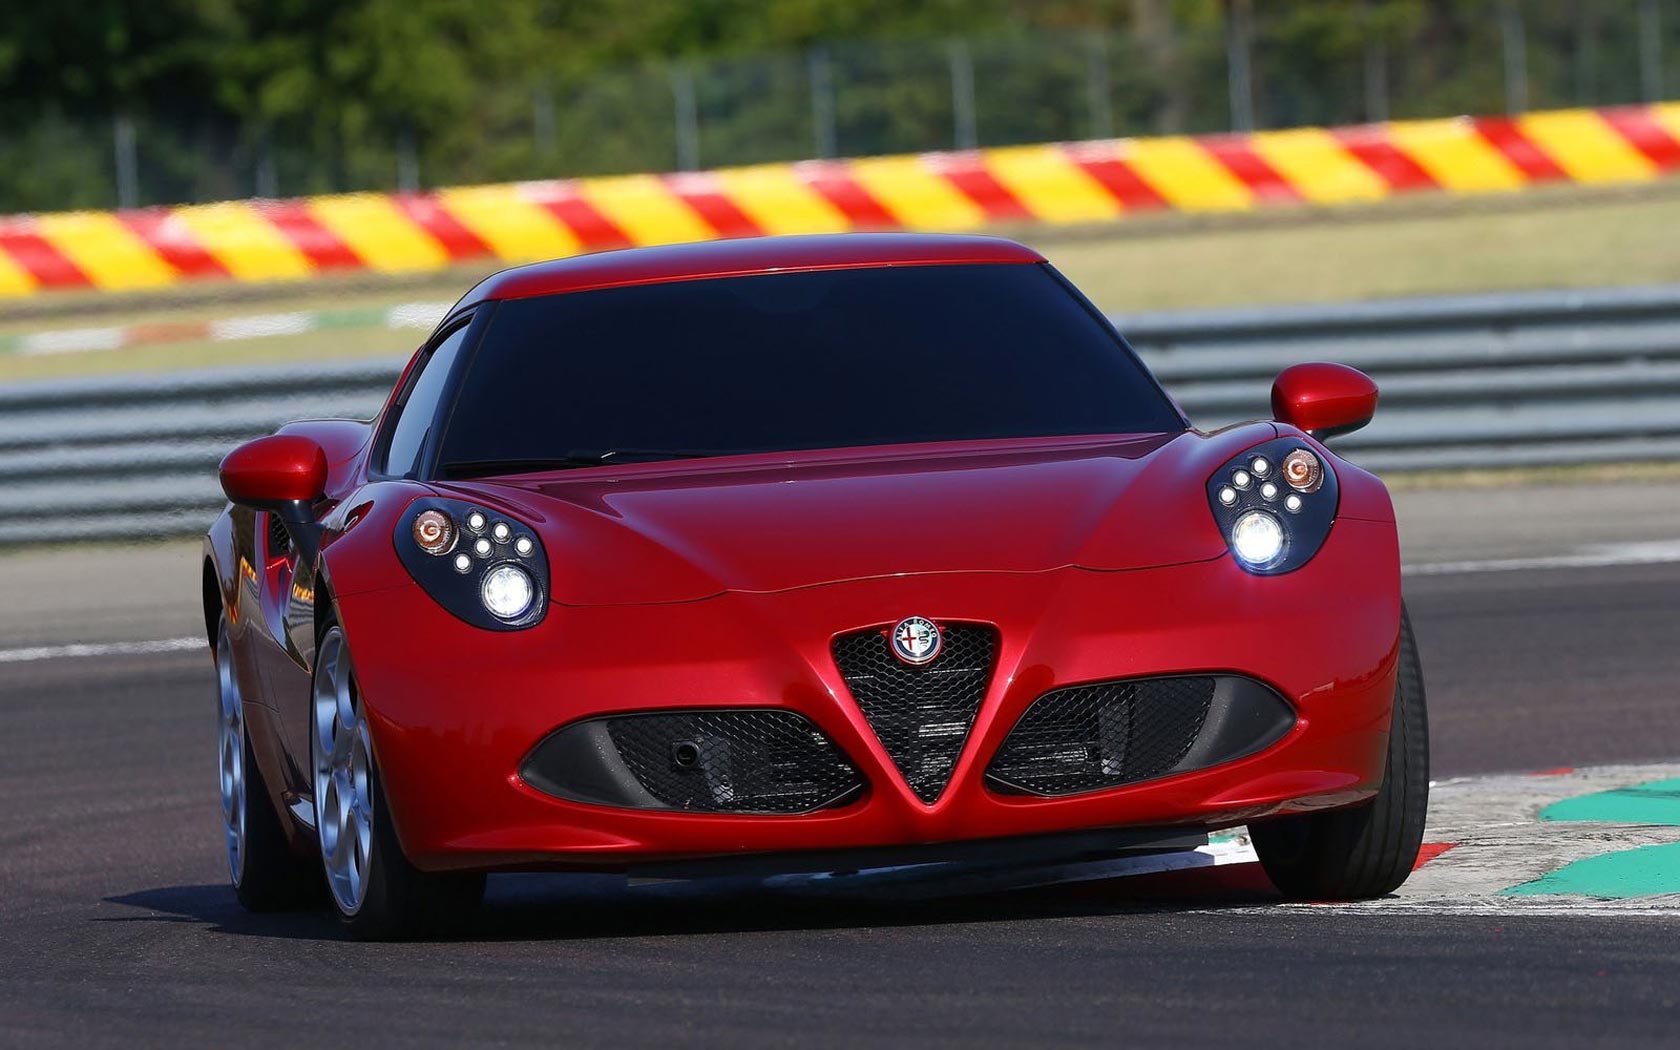  Alfa Romeo 4C 